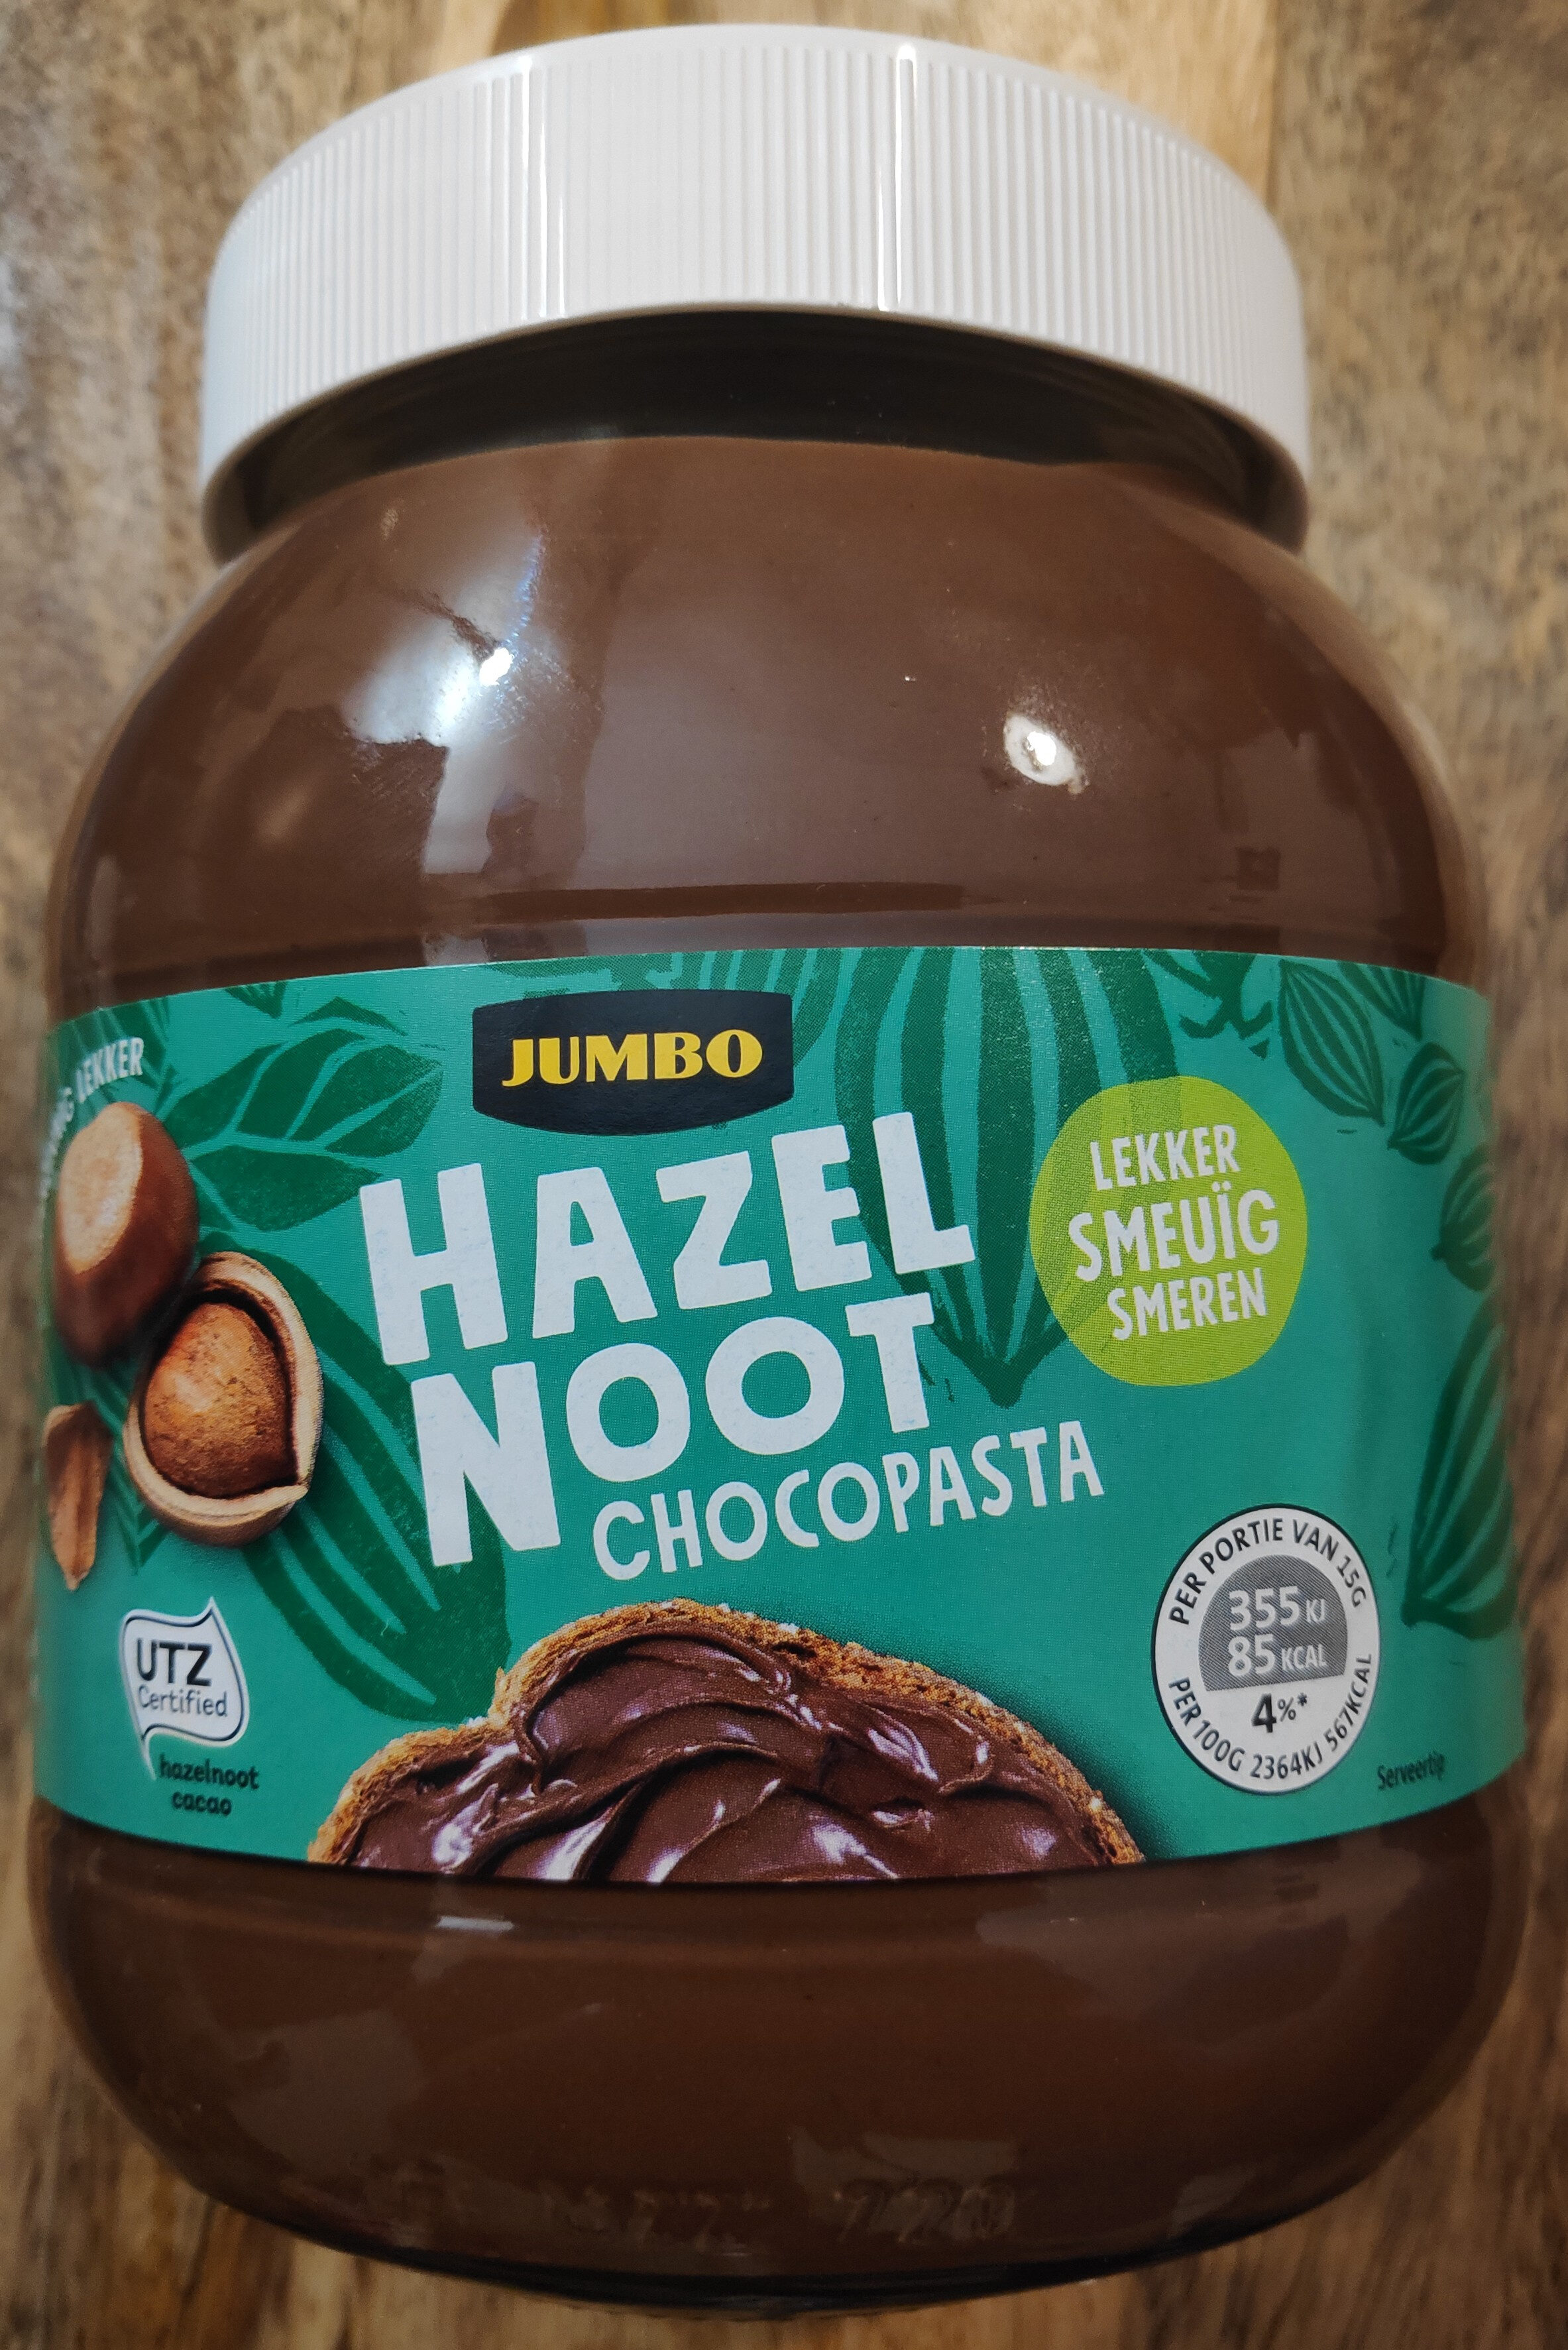 Hazelnoot chocoladepasta - Product - nl